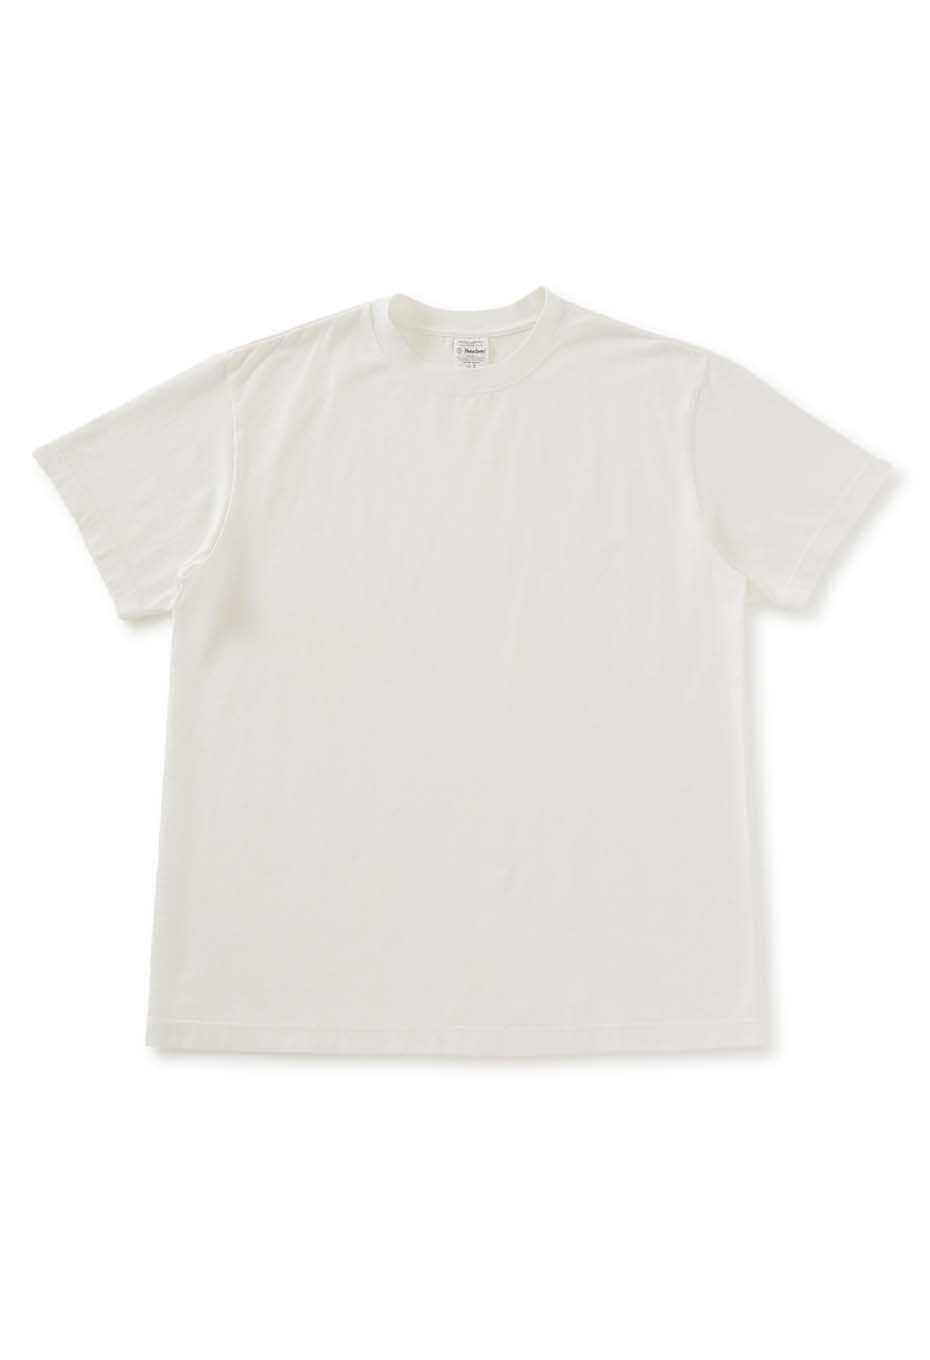 YONETOMI New Basic T-shirts